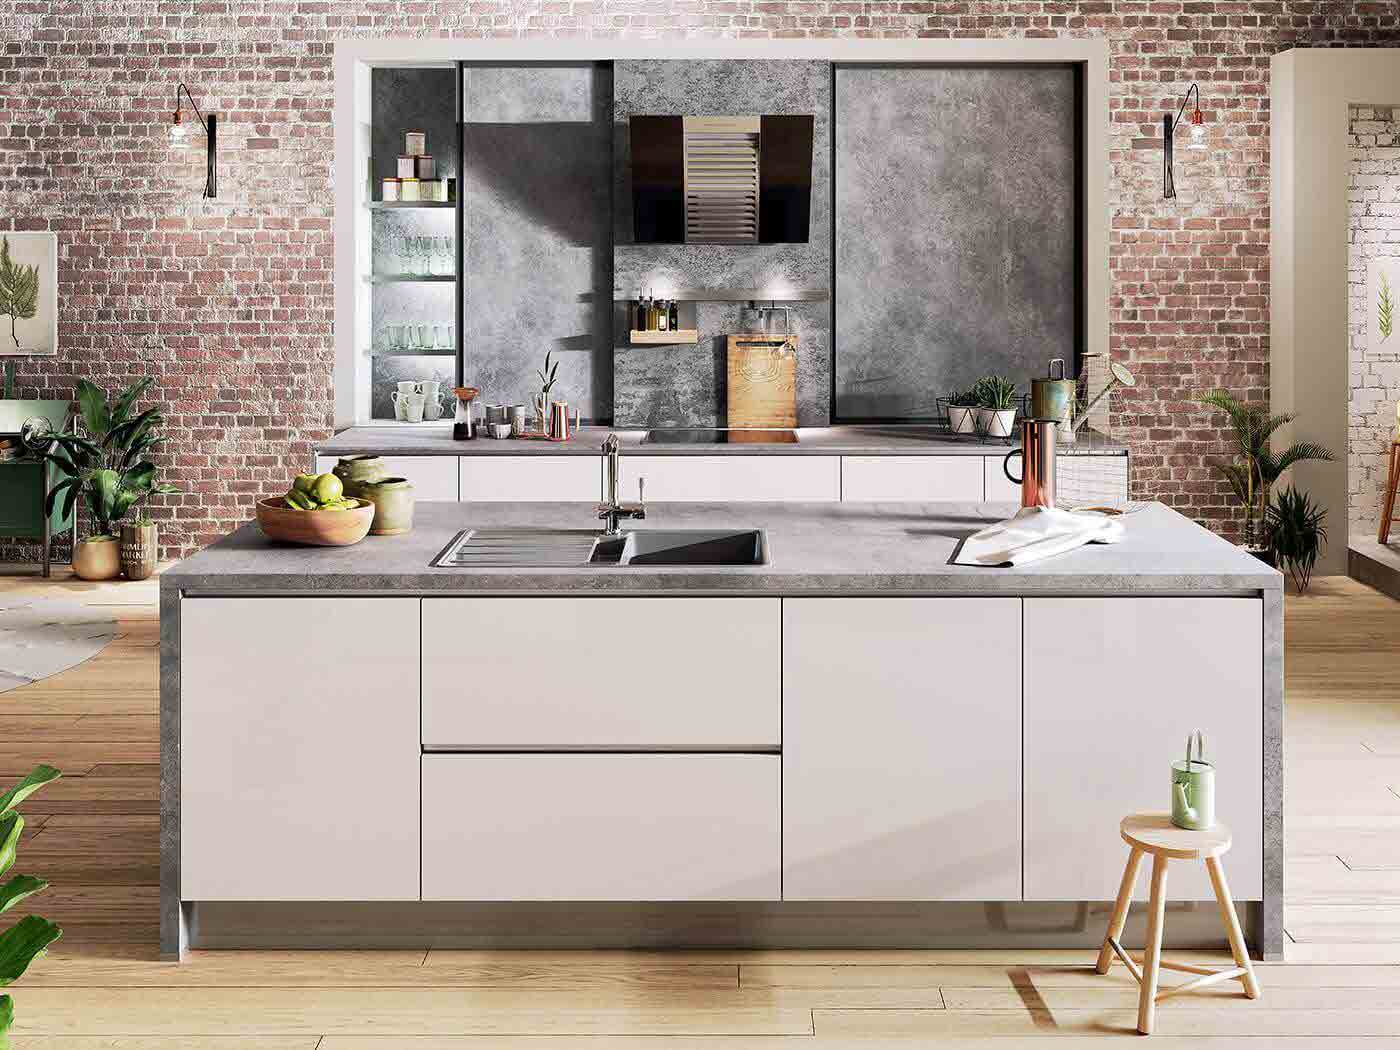 Beton ist das angesagte Highlight in der Küche. Kombiniert mit hellen Fronten wirkt die Küche besonders einladend. 